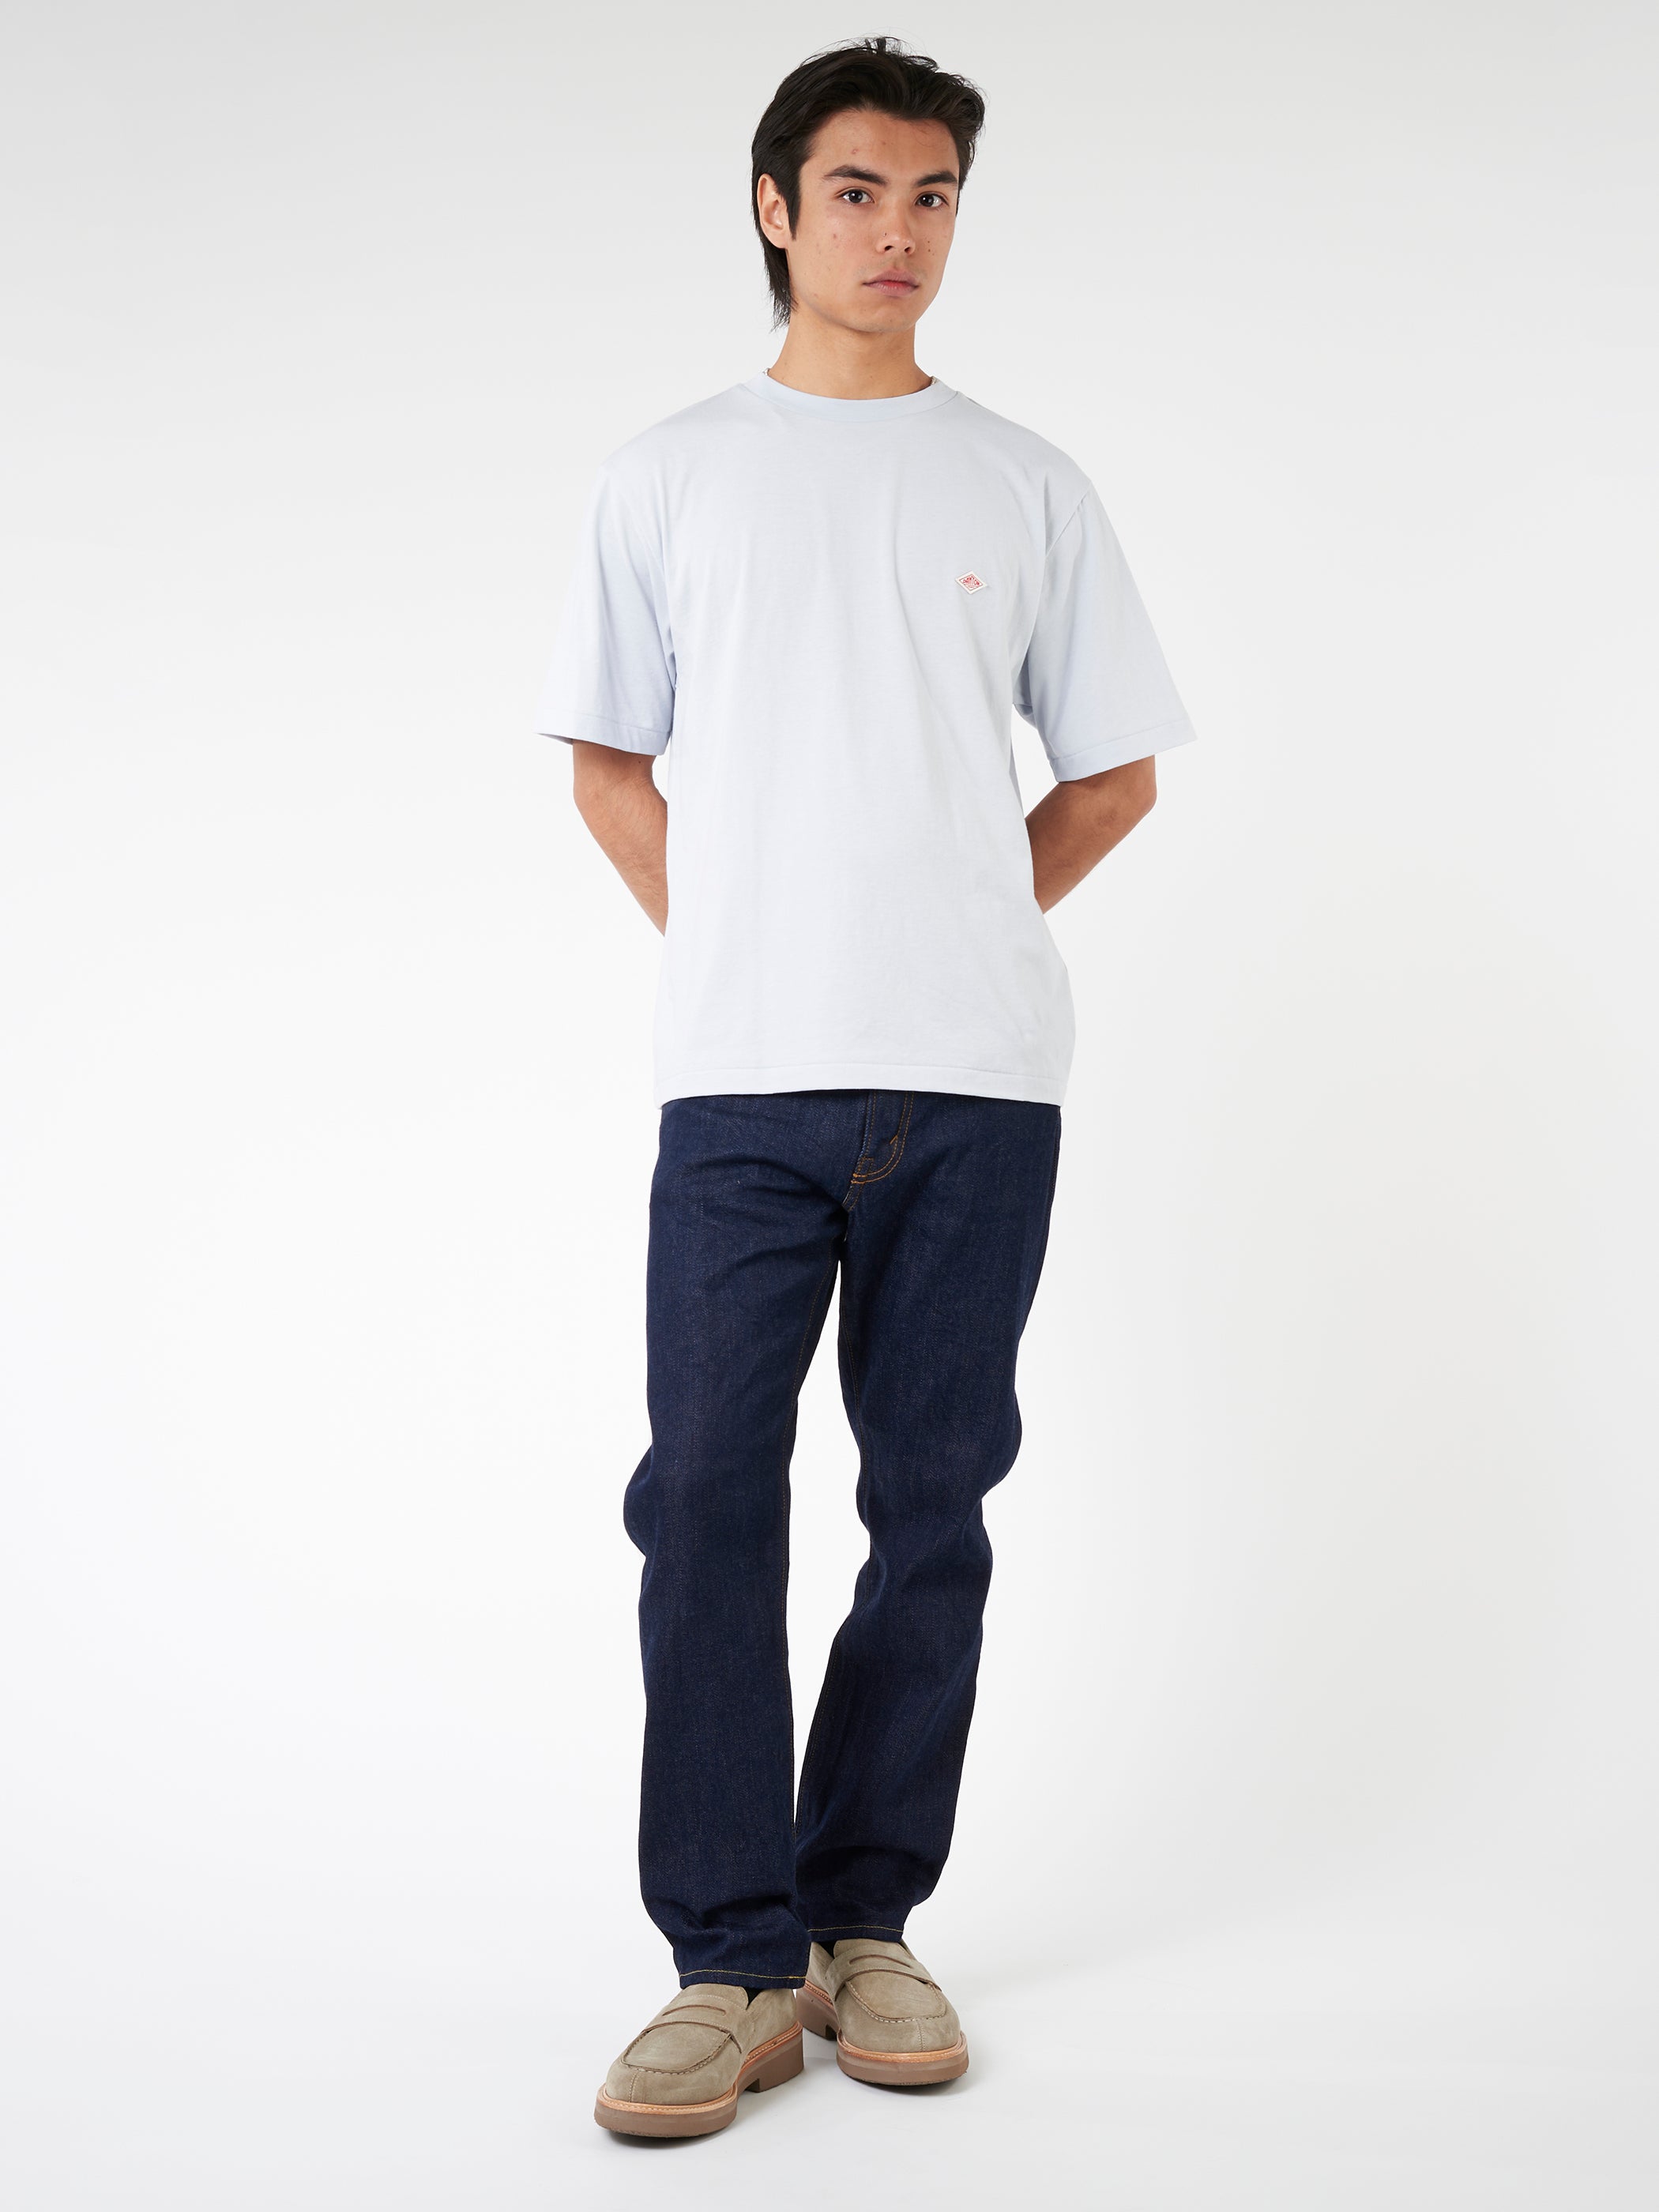 Men's Short Sleeve Inner T-Shirt